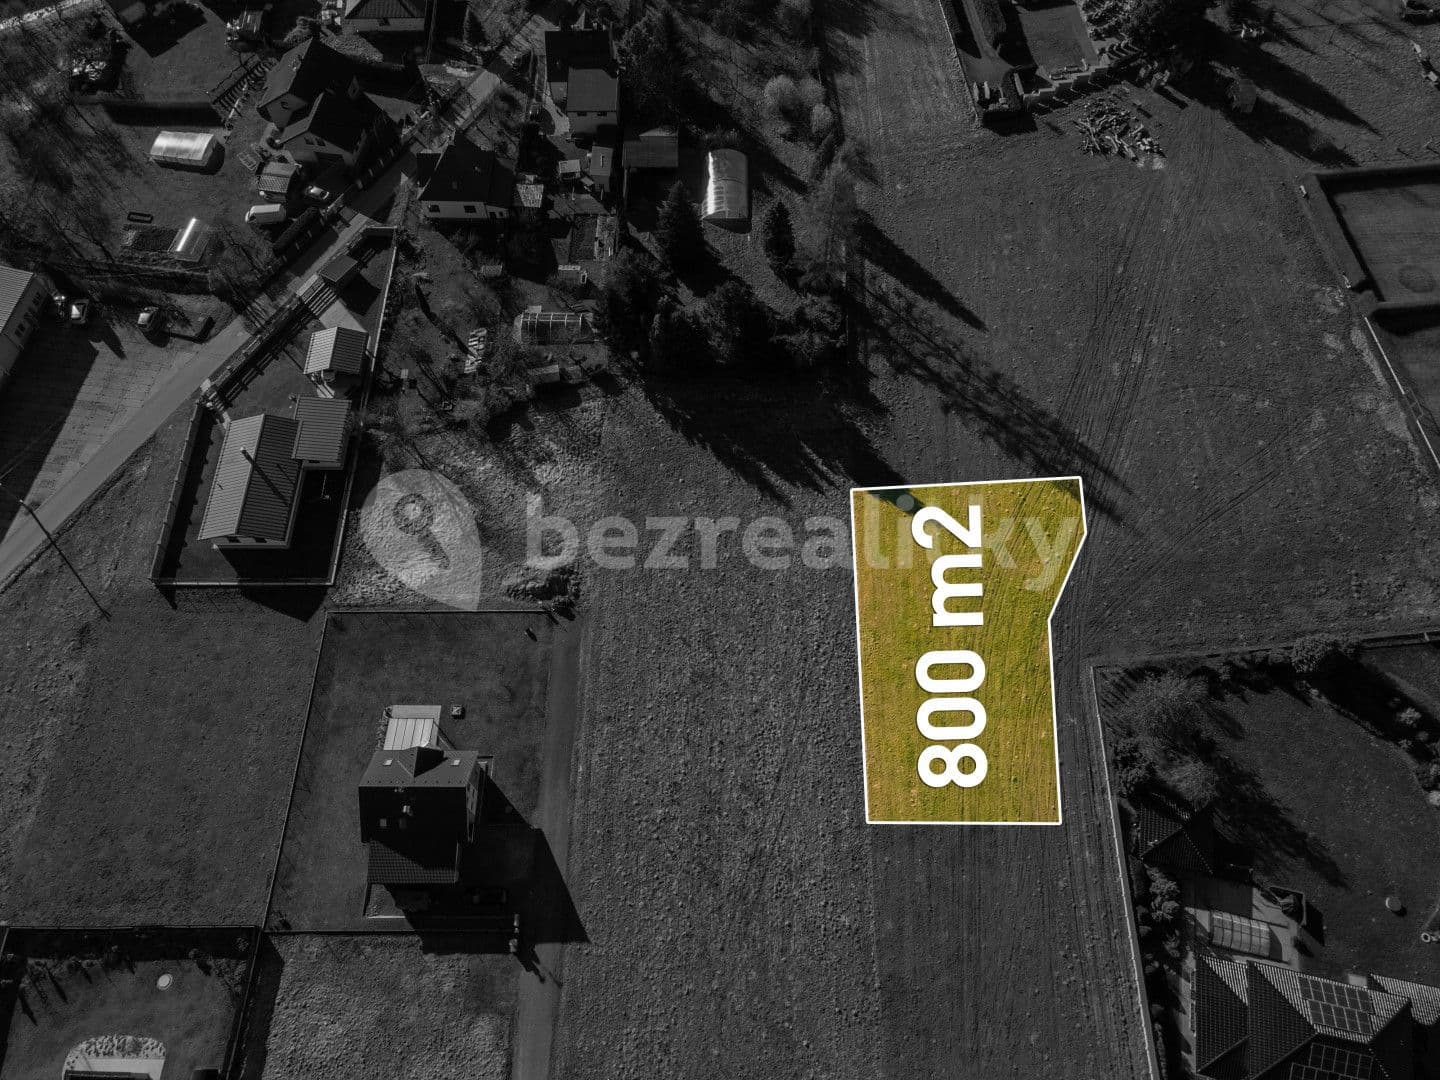 plot for sale, 800 m², Staré Město, Moravskoslezský Region